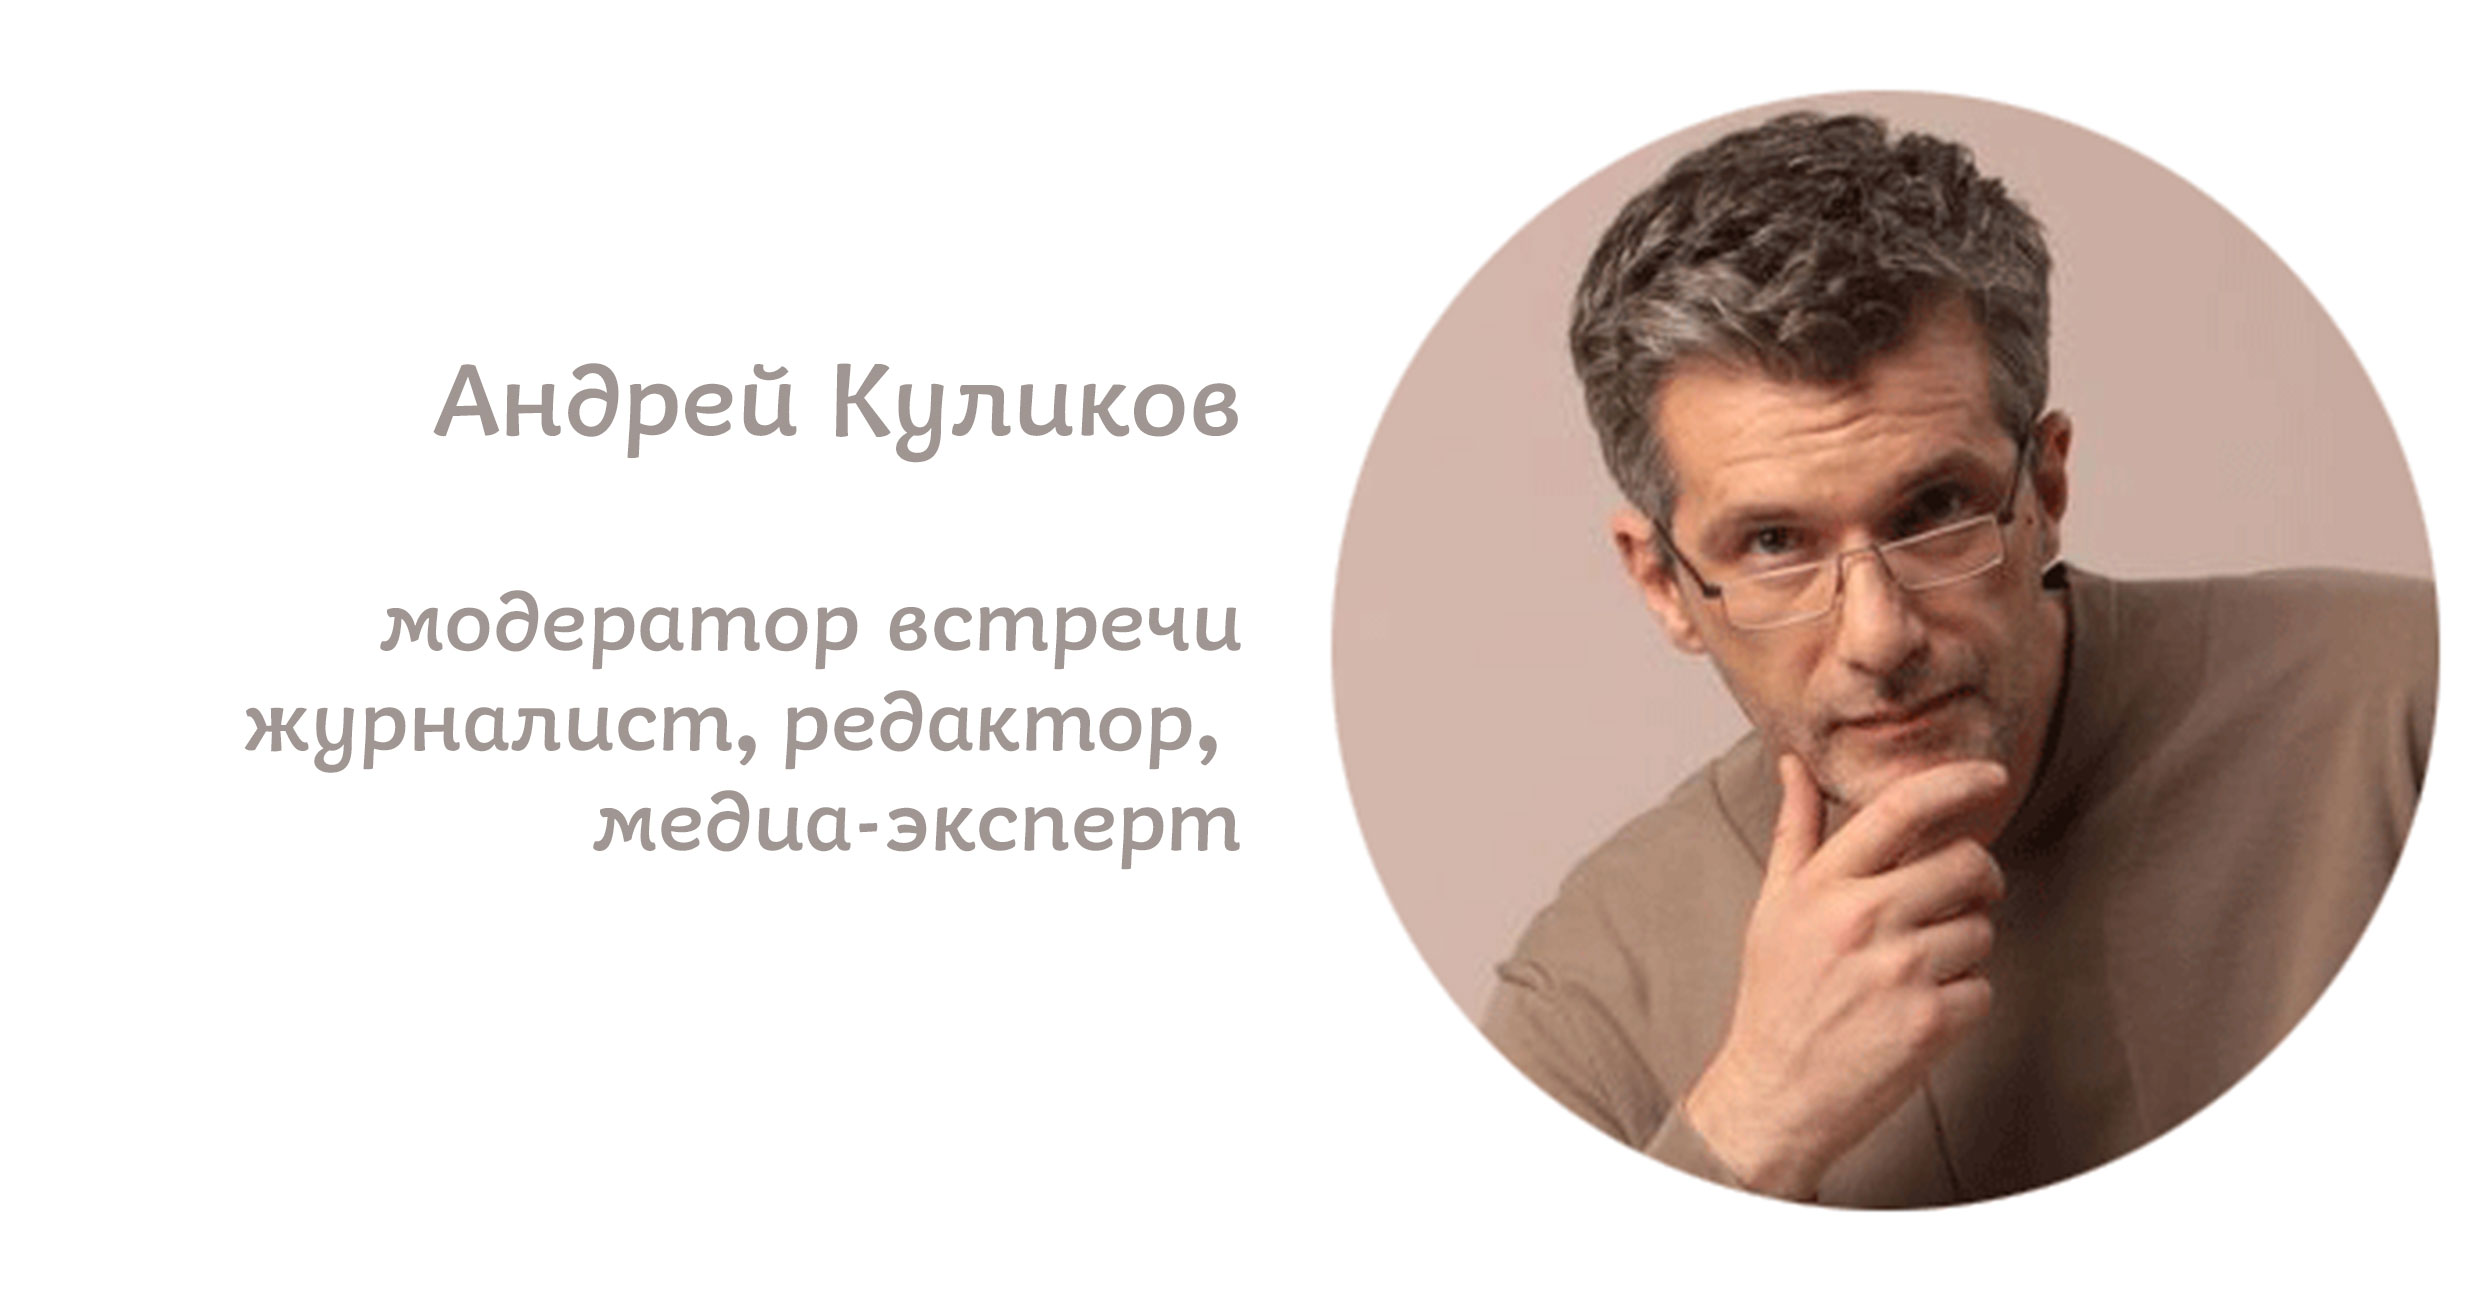 В Киеве состоится дискуссия  “Декоммунизация образовательного процесса” - картинка 4